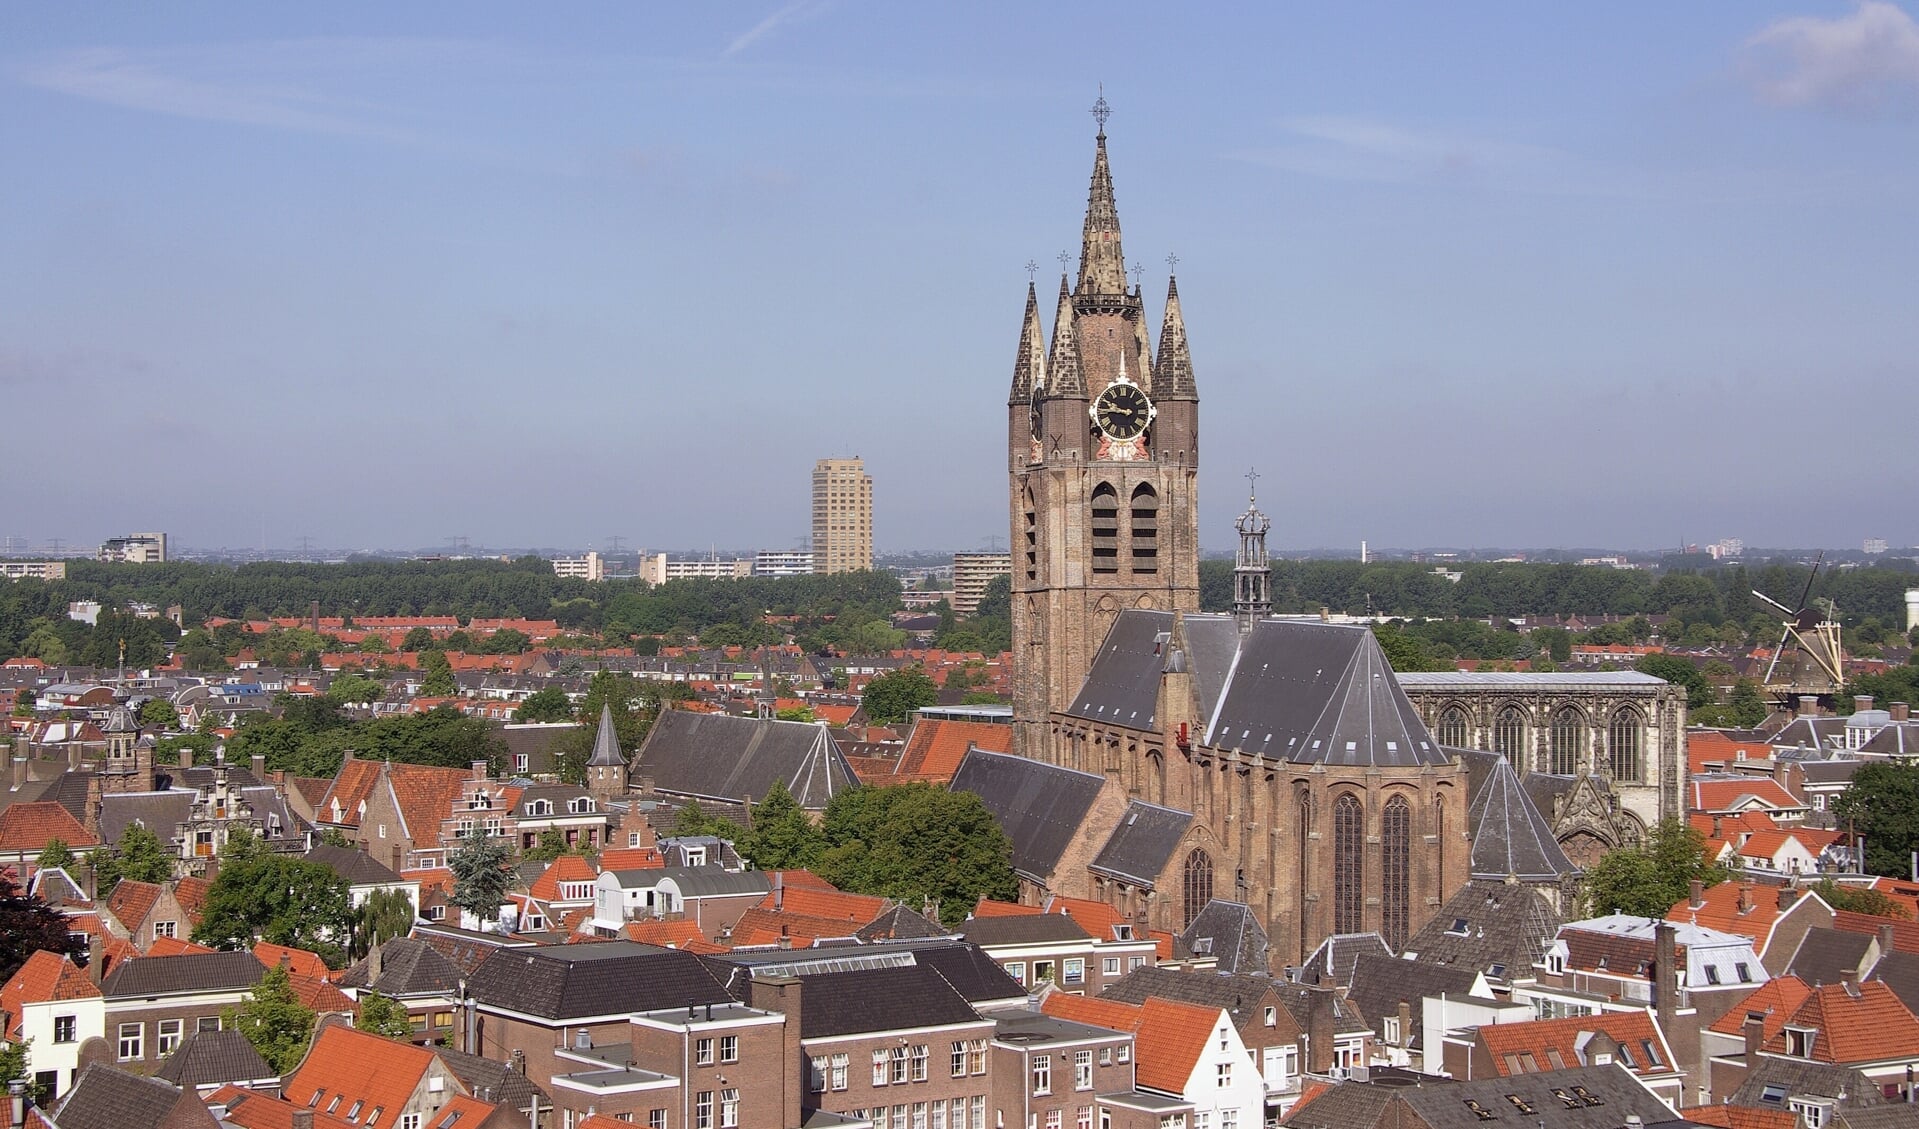 Naar schatting zijn 25.000 woningen in Delft onvoldoende geïsoleerd.